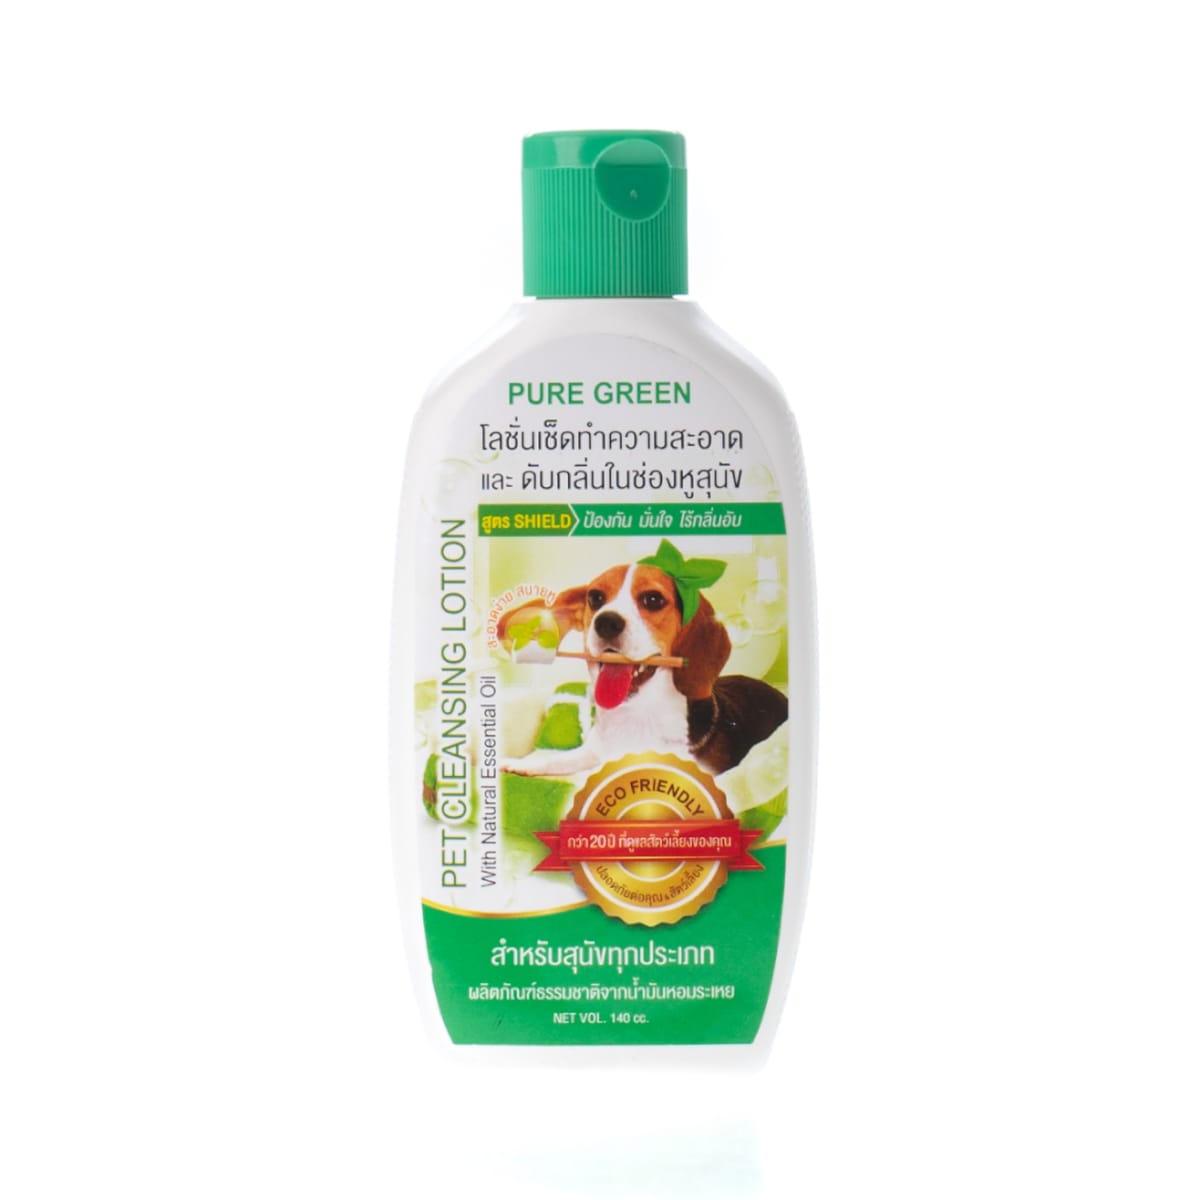 Pure Green เพียวกรีน โลชั่นเช็ดหูสุนัข 140 ml